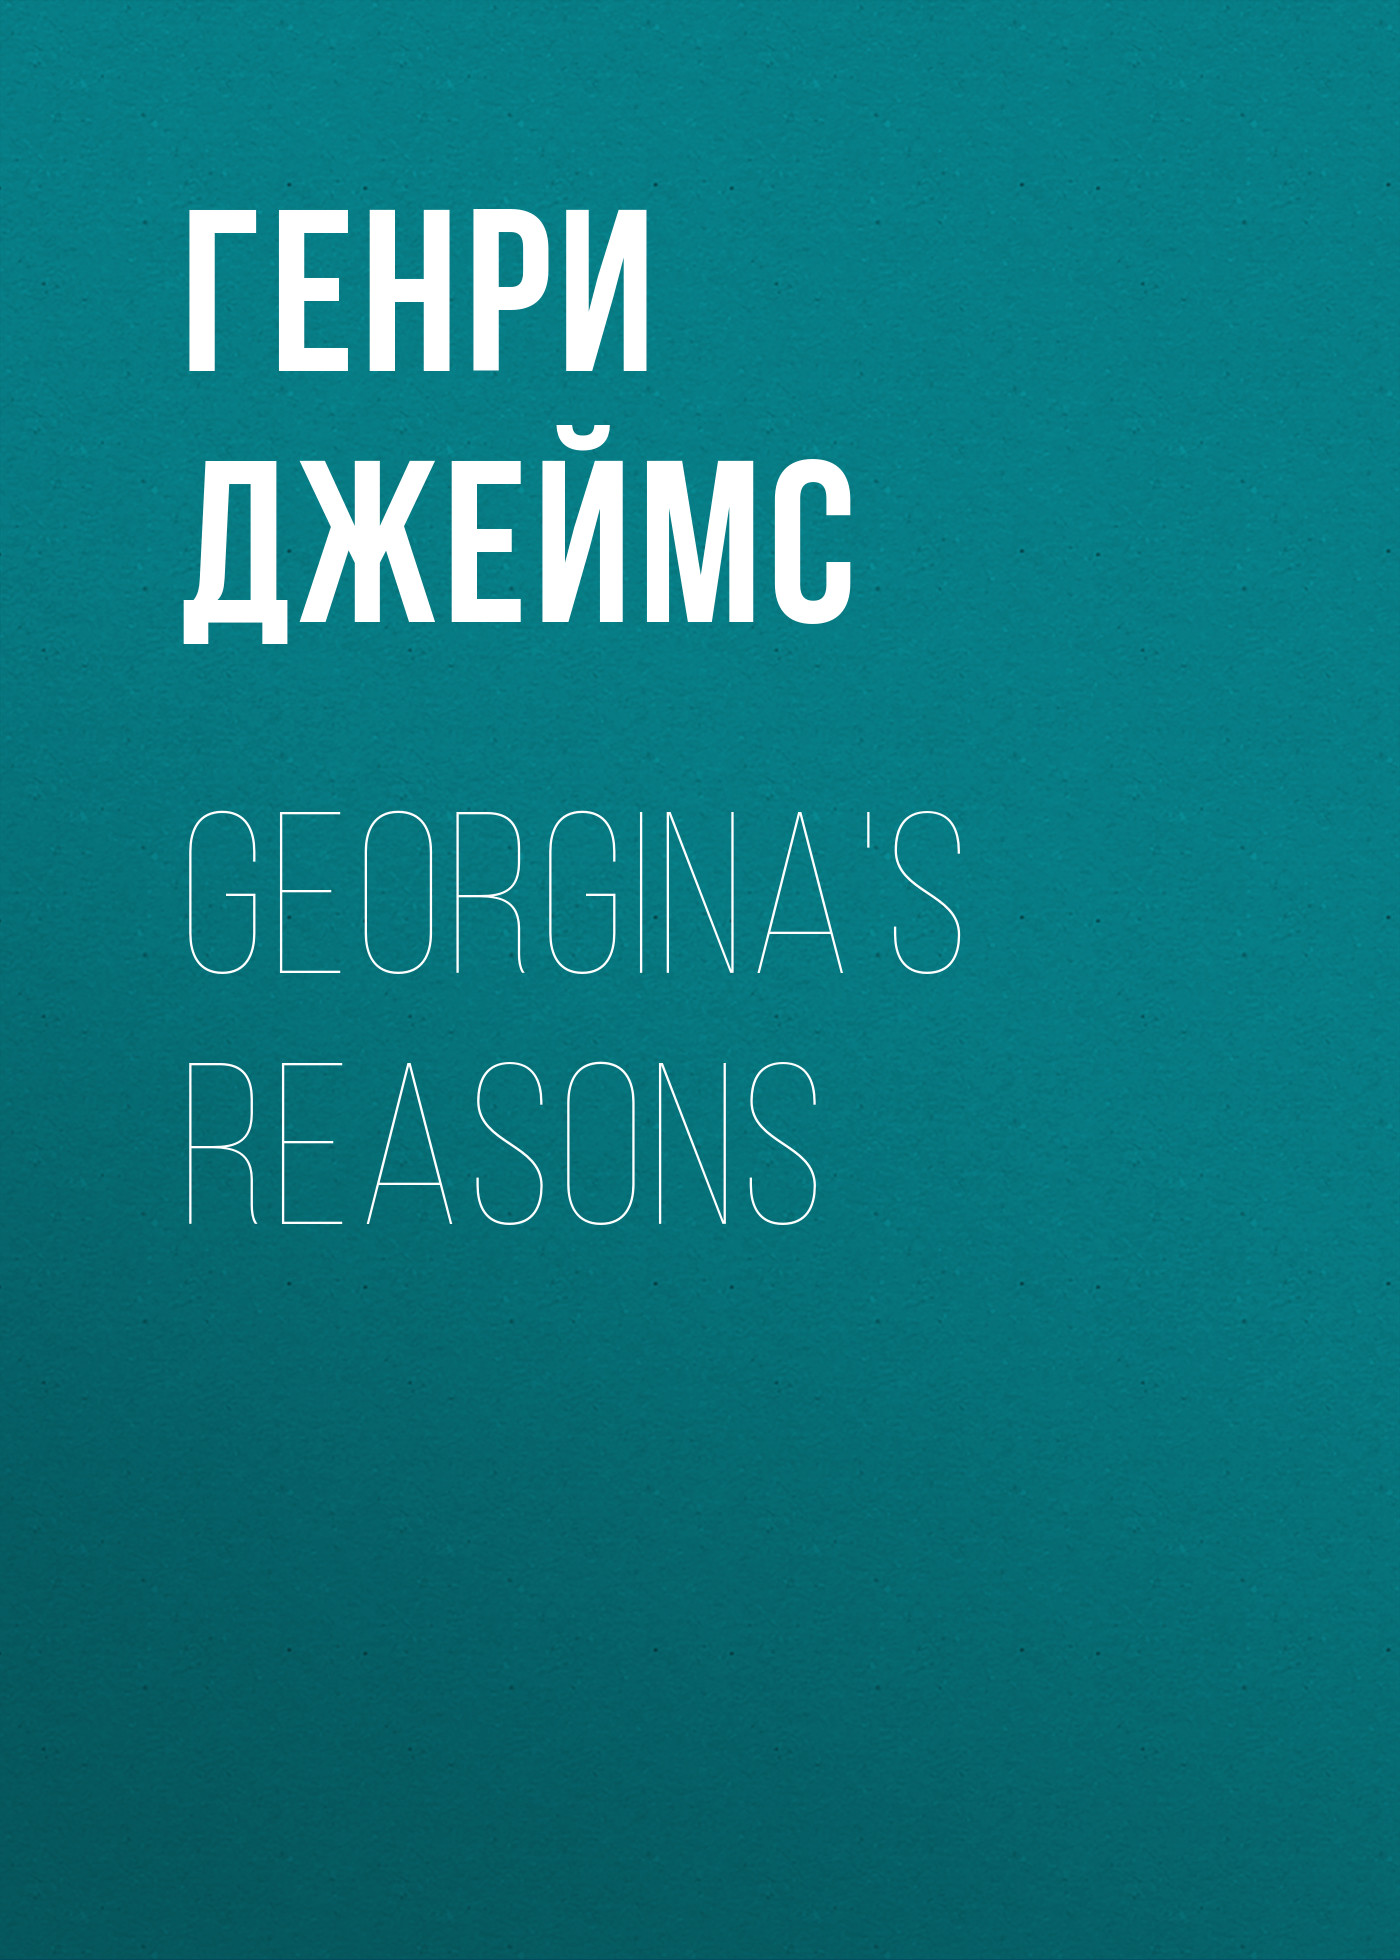 Книга Georgina's Reasons из серии , созданная Генри Джеймс, может относится к жанру Зарубежная классика, Зарубежная старинная литература. Стоимость электронной книги Georgina's Reasons с идентификатором 34841654 составляет 0 руб.